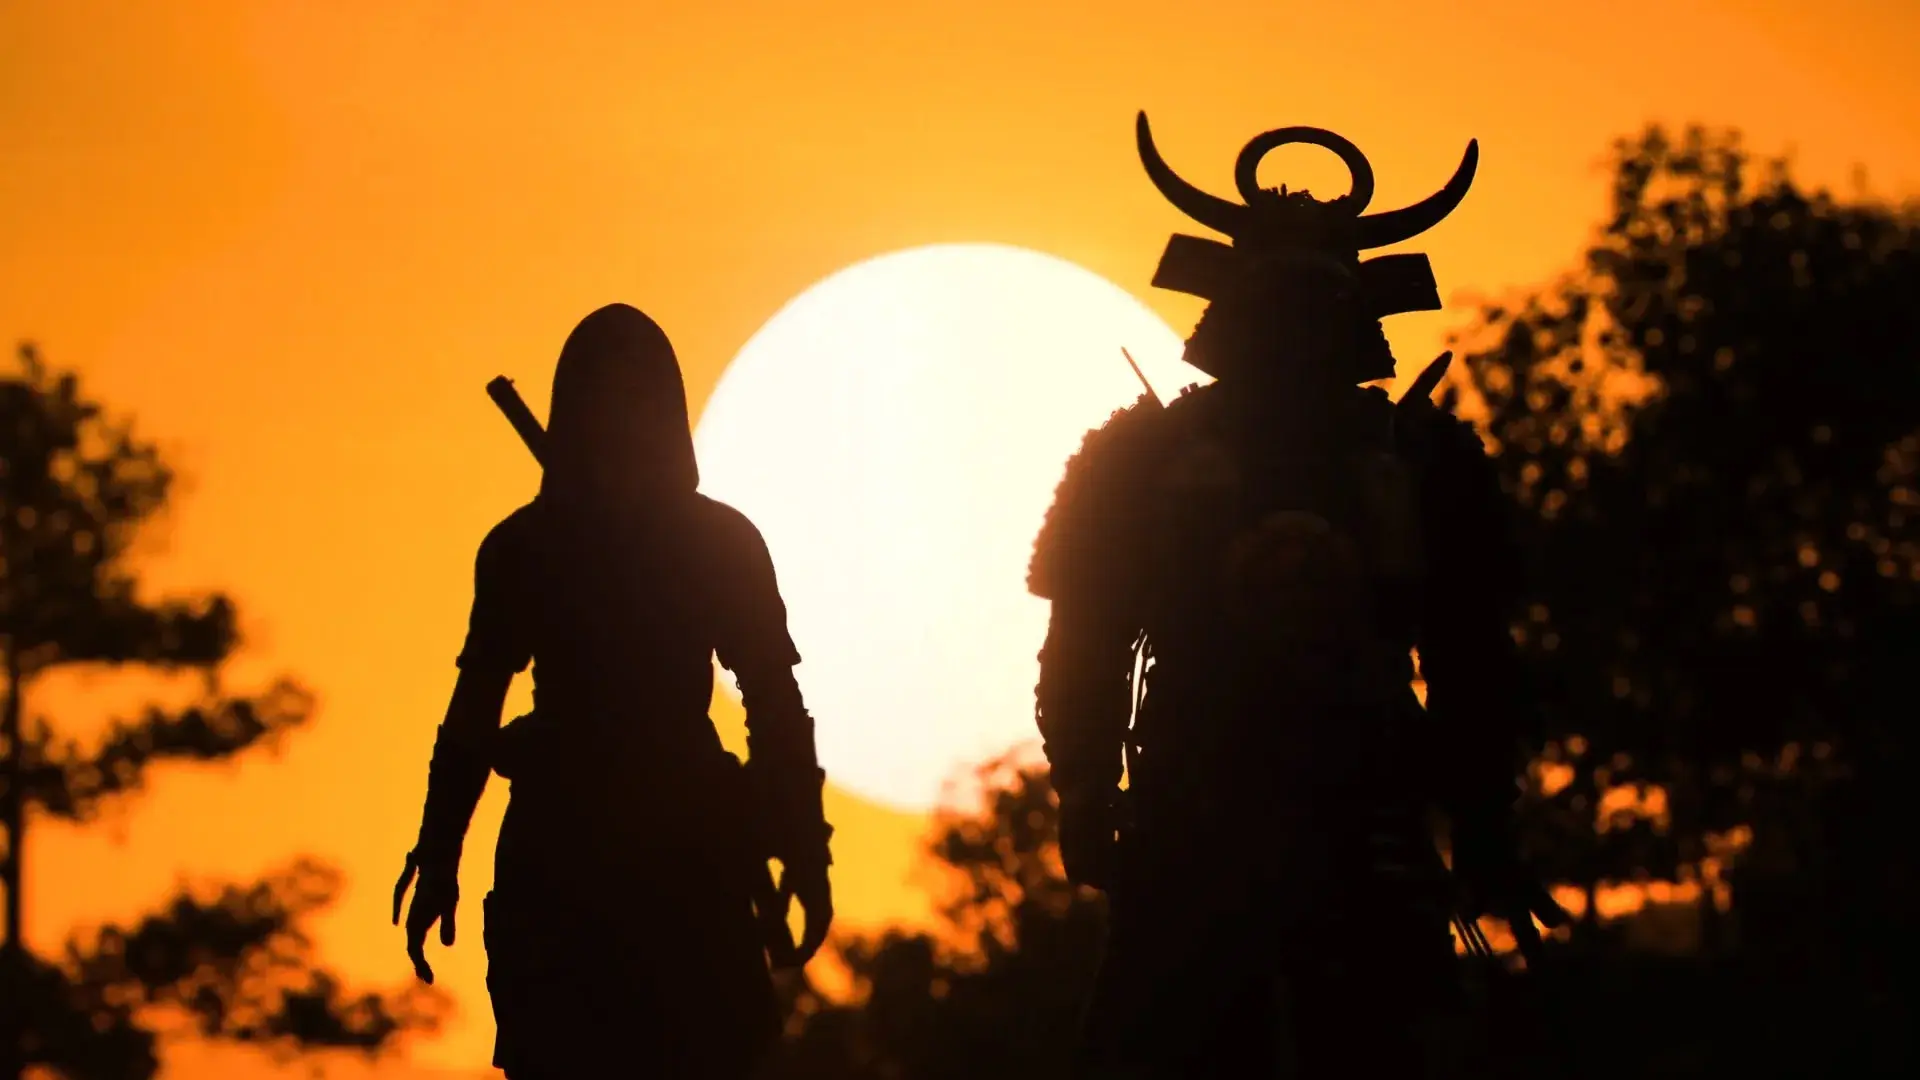 سایه نائوئی و یاسوکه در زمان غروب آفتاب Assassin’s Creed Shadows